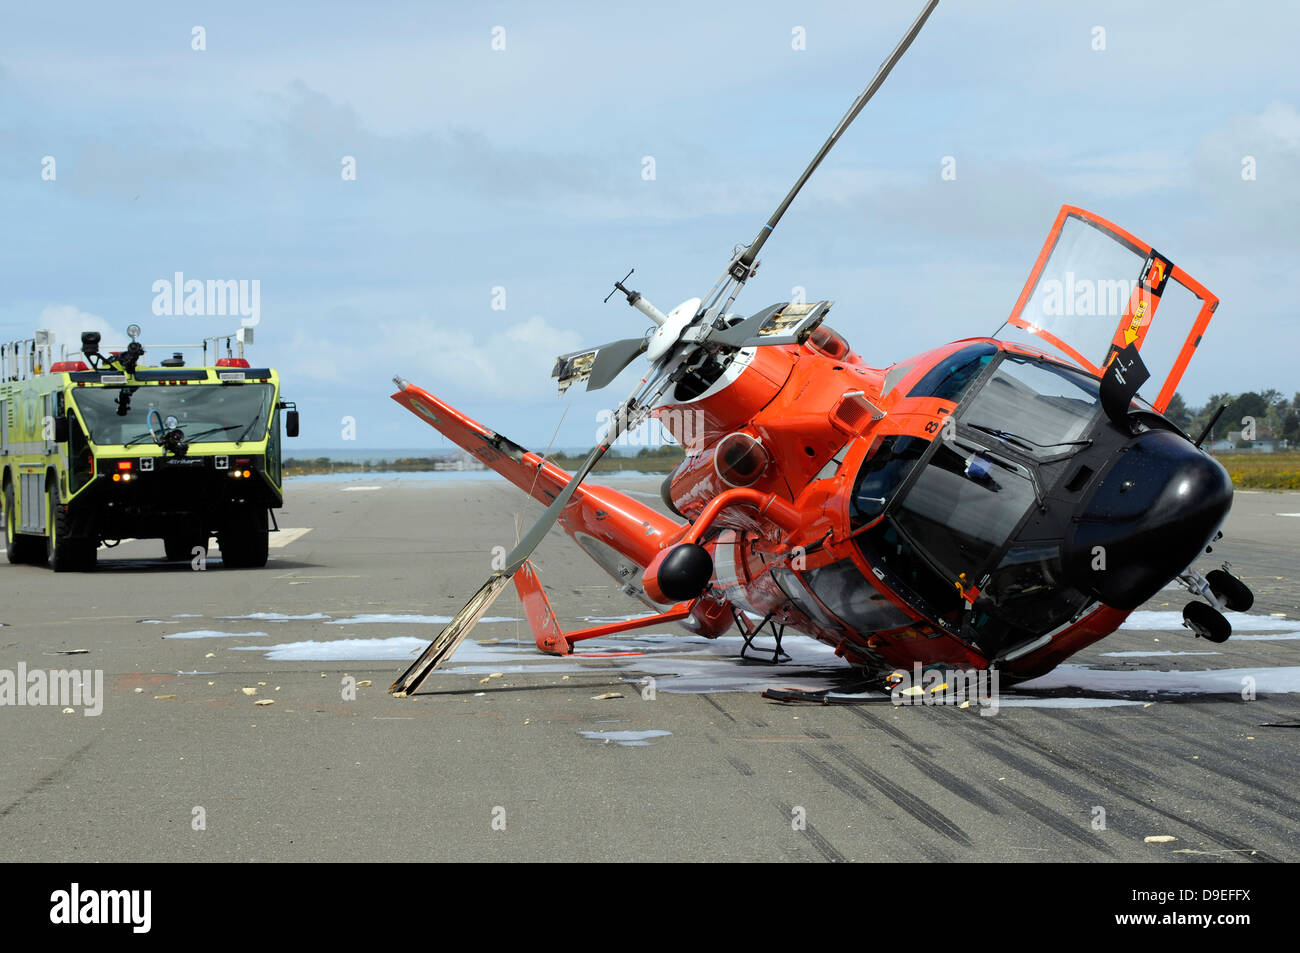 Un Servicio de Guardacostas de Estados Unidos MH-65 Dolphin helicóptero descansa sobre su costado después de que se estrelló en el aeropuerto de Arcata durante una misión de entrenamiento. Foto de stock